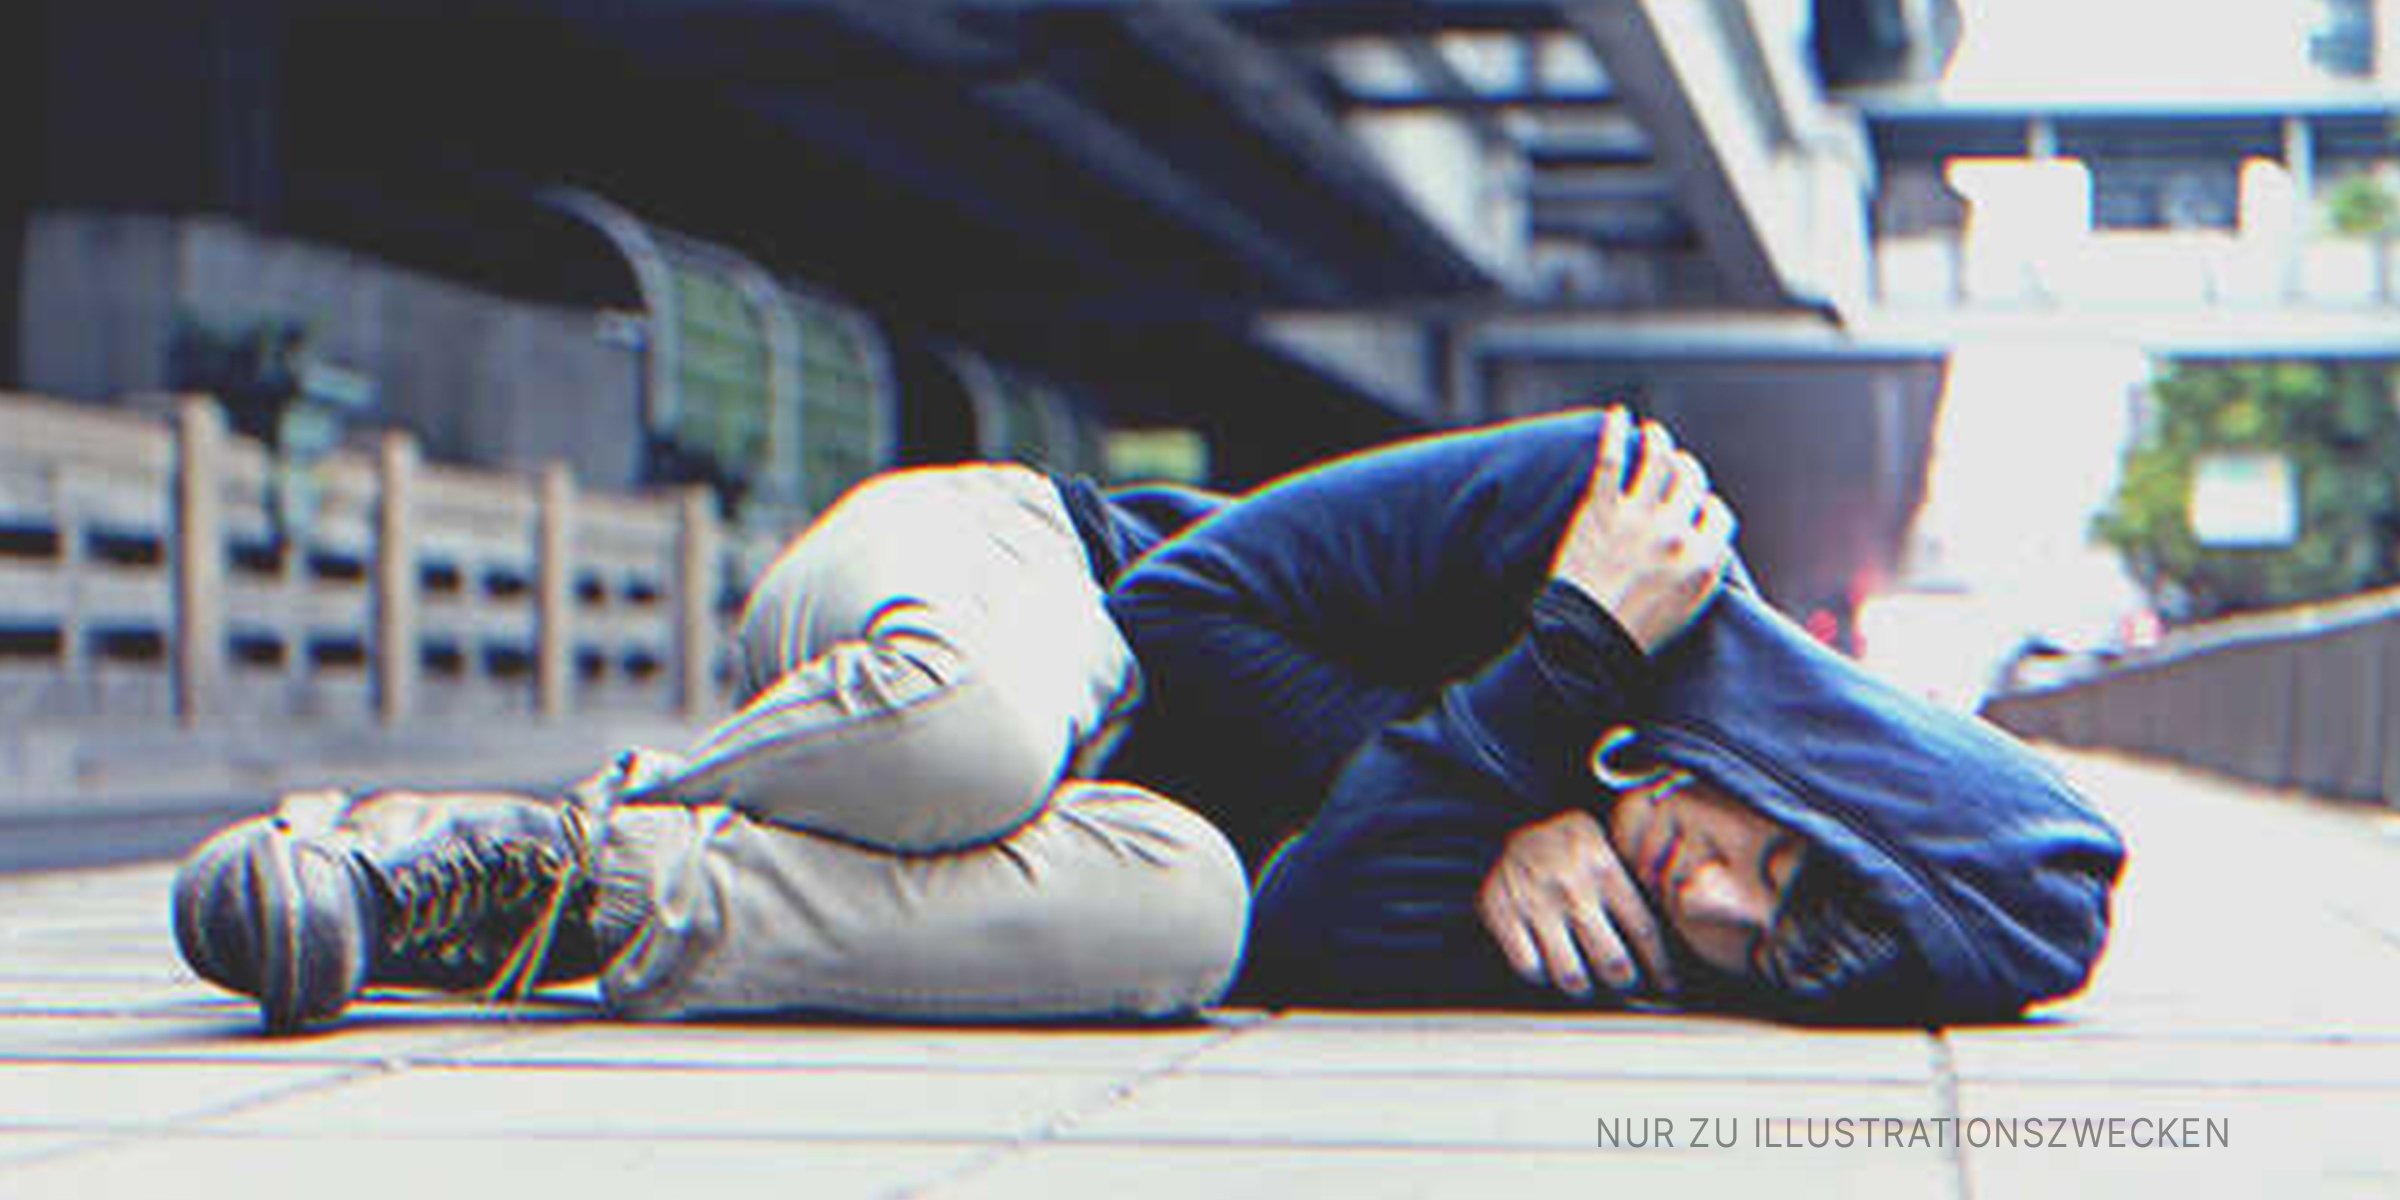 Ein schlafender Junge auf einem Bürgersteig. | Quelle: Shutterstock